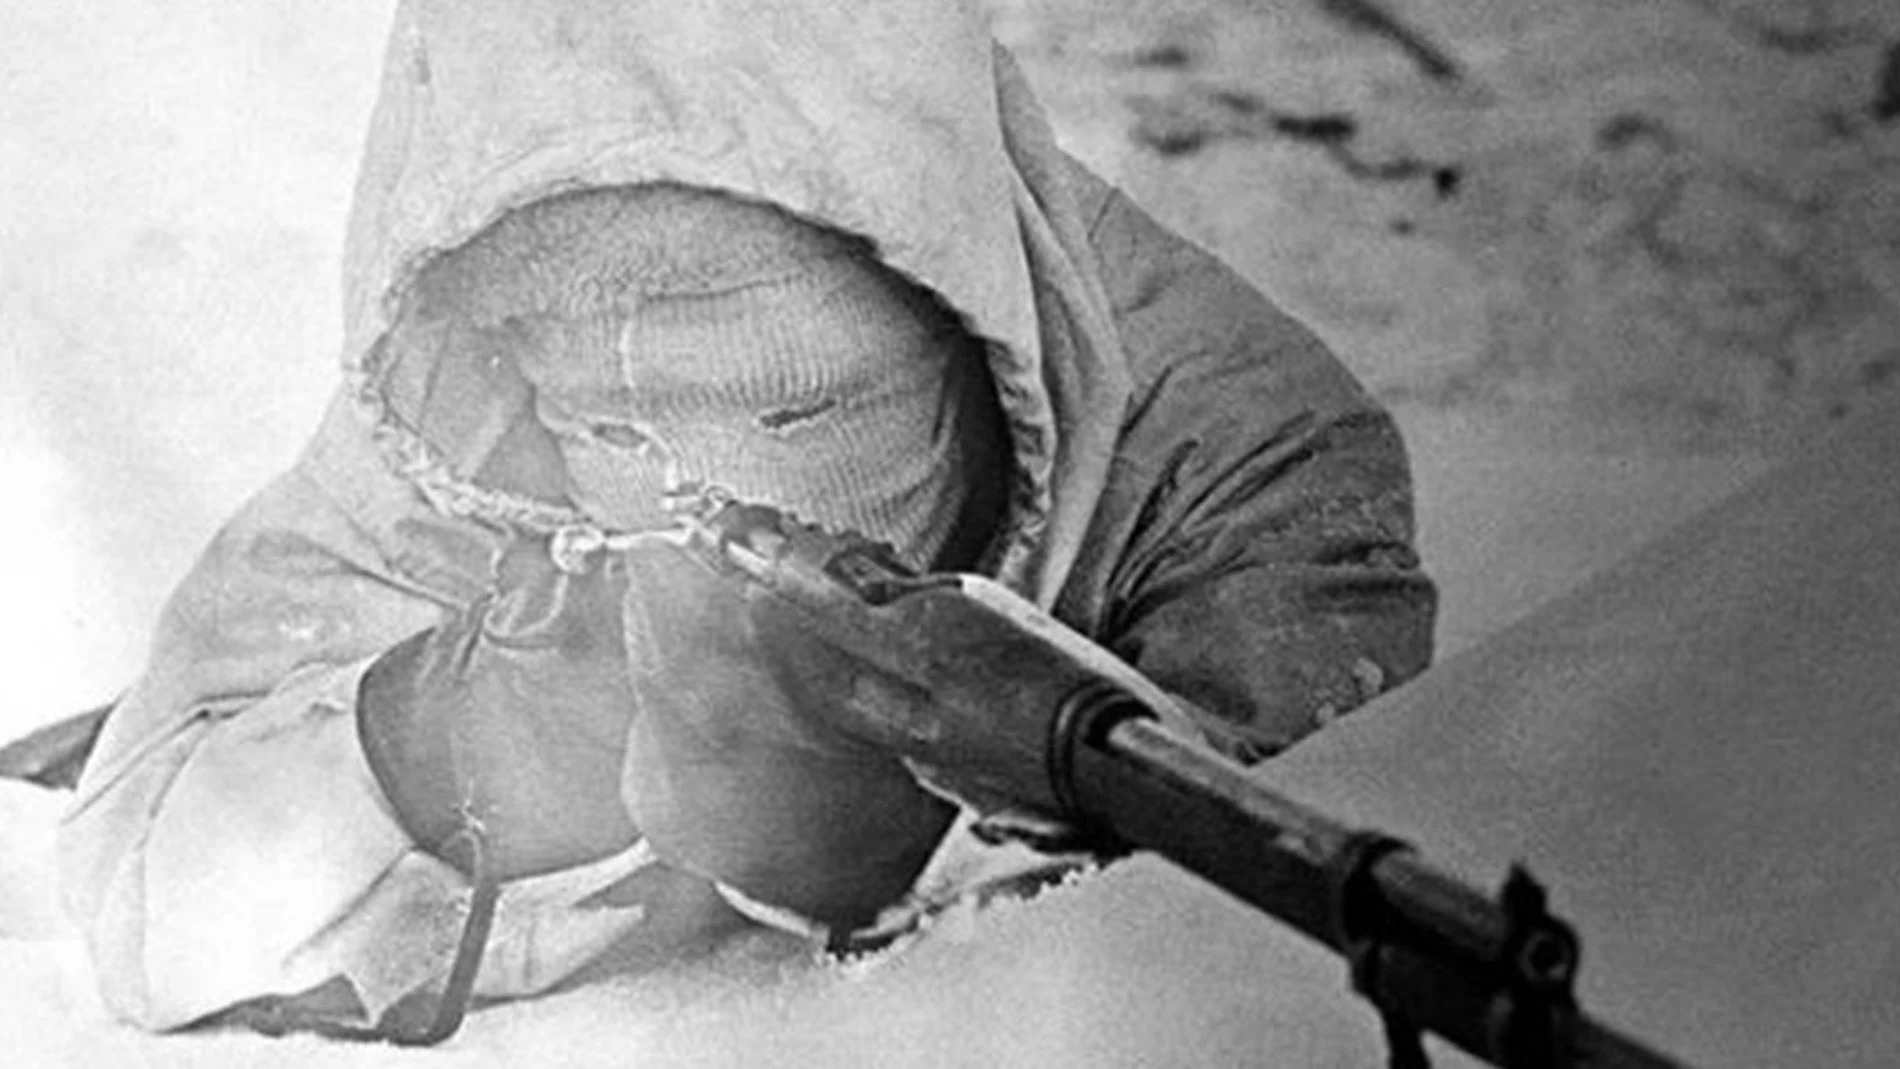 El francotirador Simo Häyhä oculto en la nieve durante la Guerra de Invierno